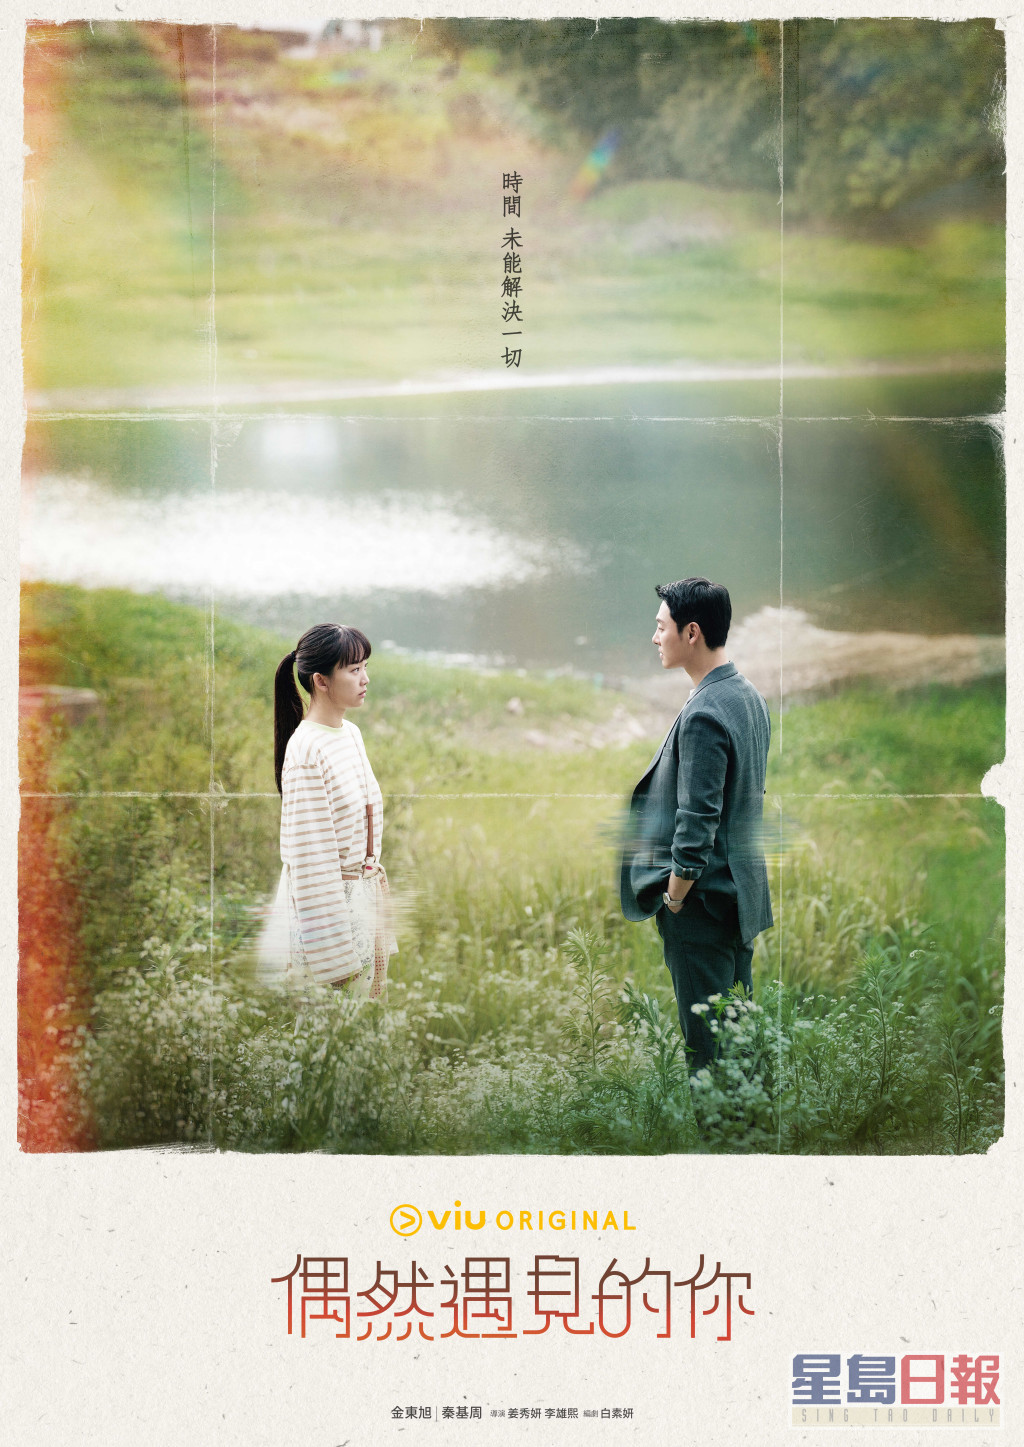 韩剧《偶然遇见的你》逢星期一、二晚上10时在「黄Viu煲剧平台」上架。